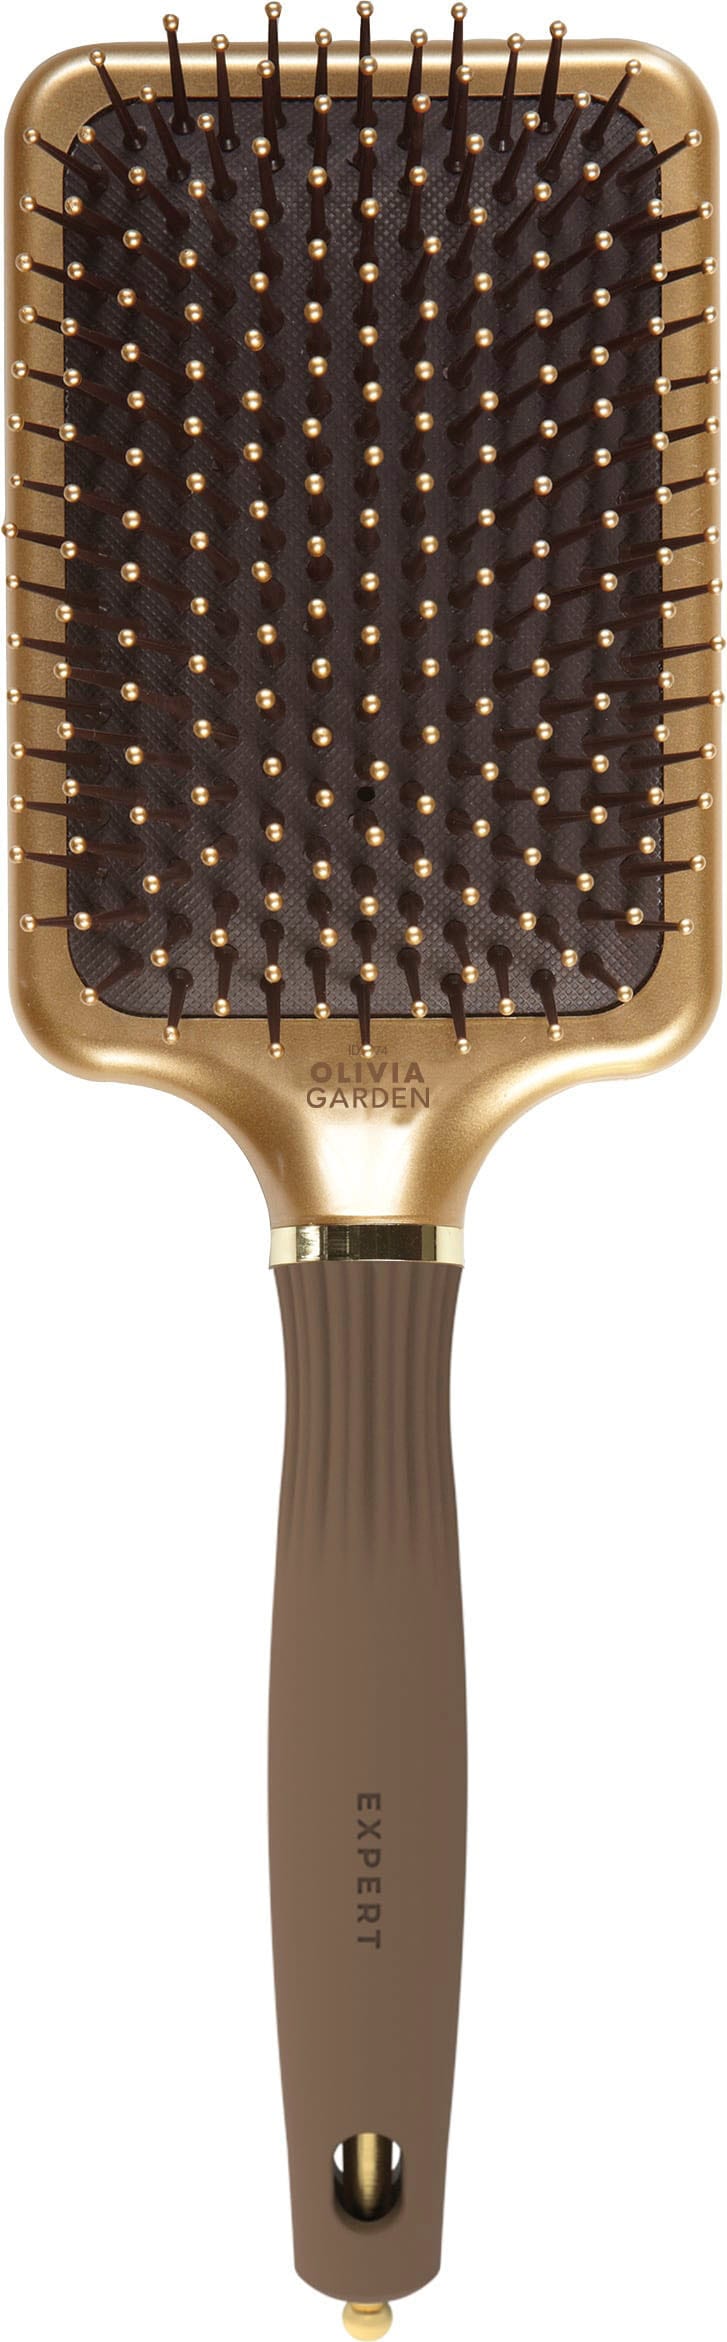 OLIVIA GARDEN Haarbürste CARE RECTANGULAR Nylon L« kaufen »EXPERT Bristle Gold&Brown